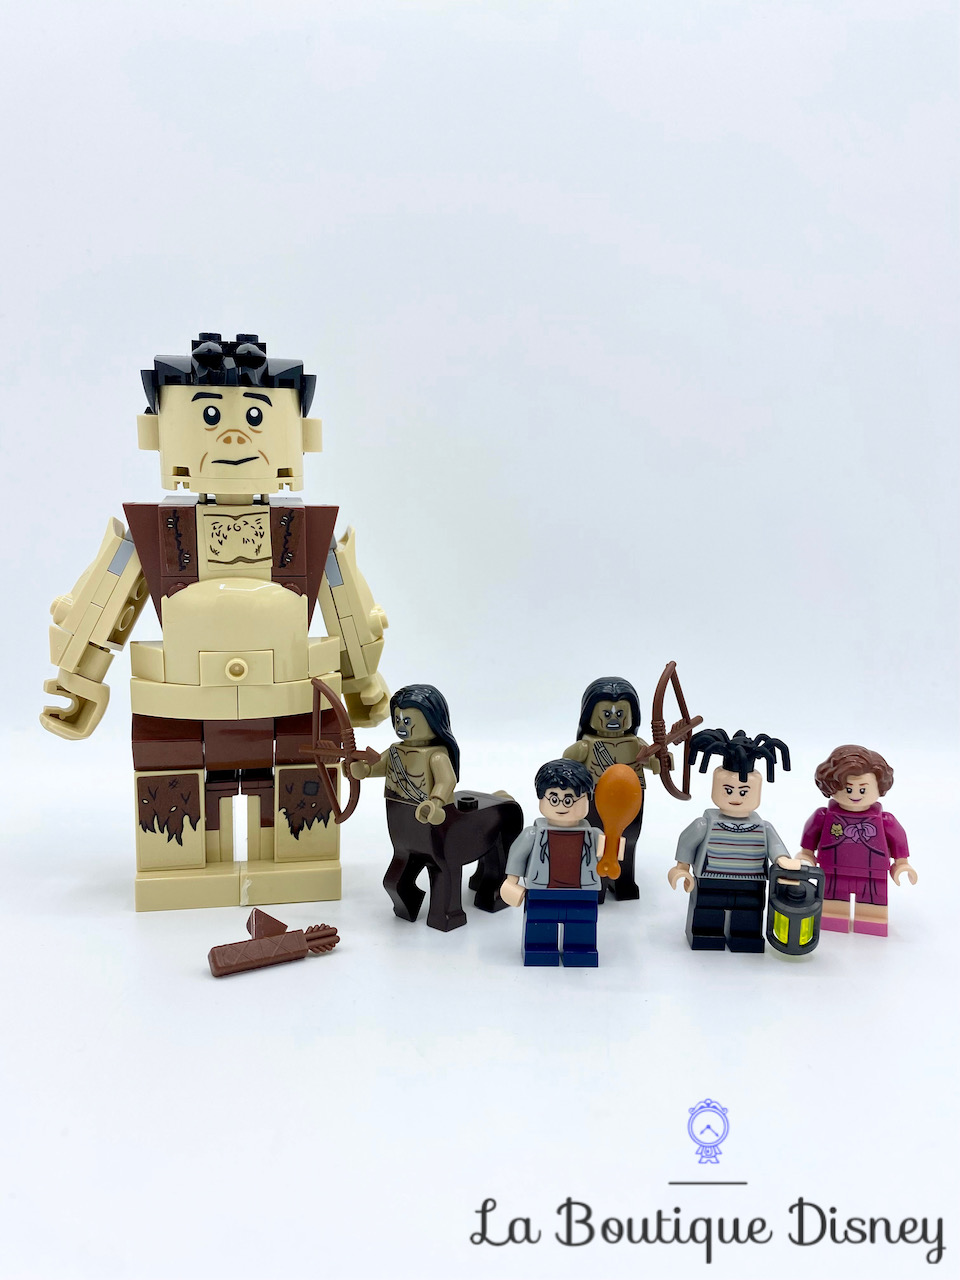 LEGO Jeux de société 3862 pas cher, Harry Potter Poudlard